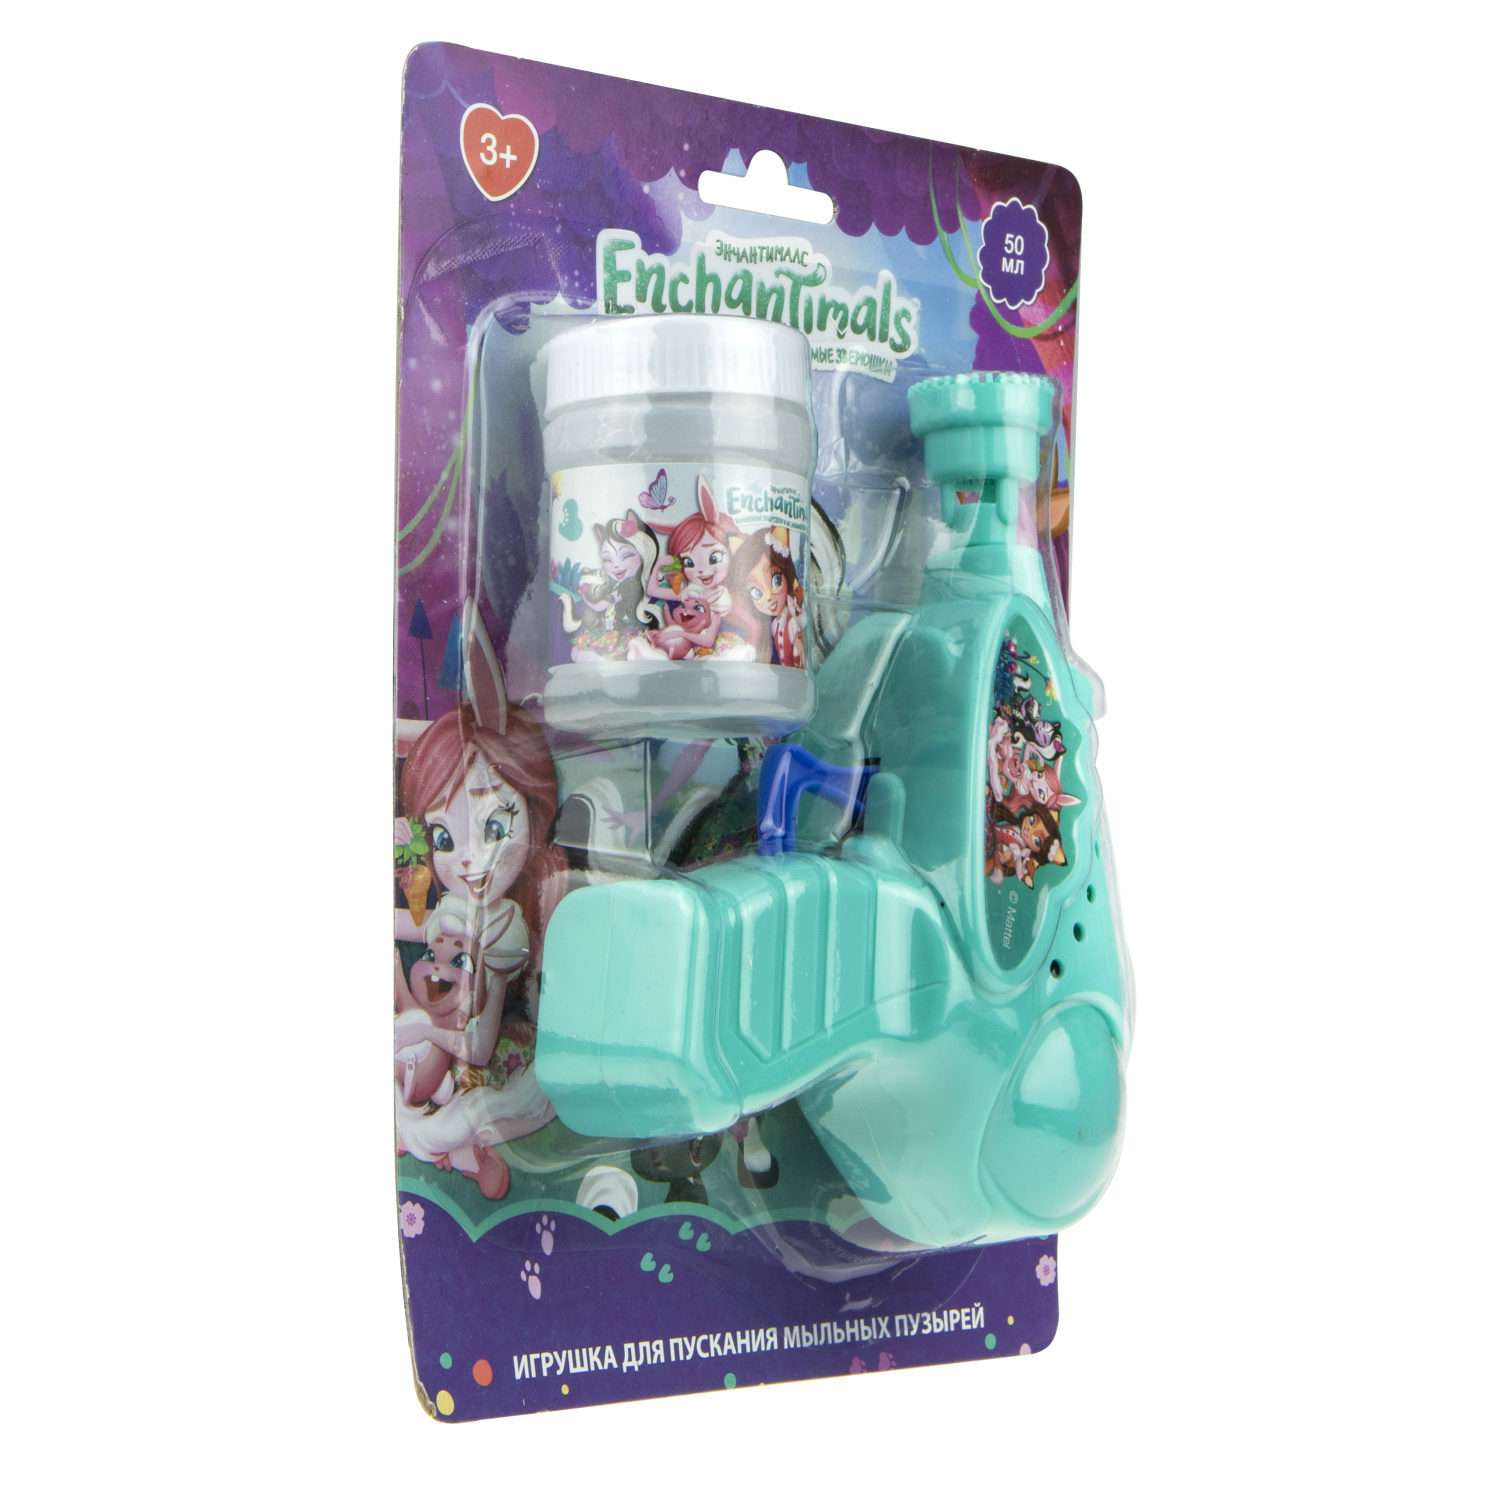 Генератор мыльных пузырей Enchantimals 1YOY с раствором пистолет бластер аппарат детские игрушки для улицы и дома для девочек - фото 3